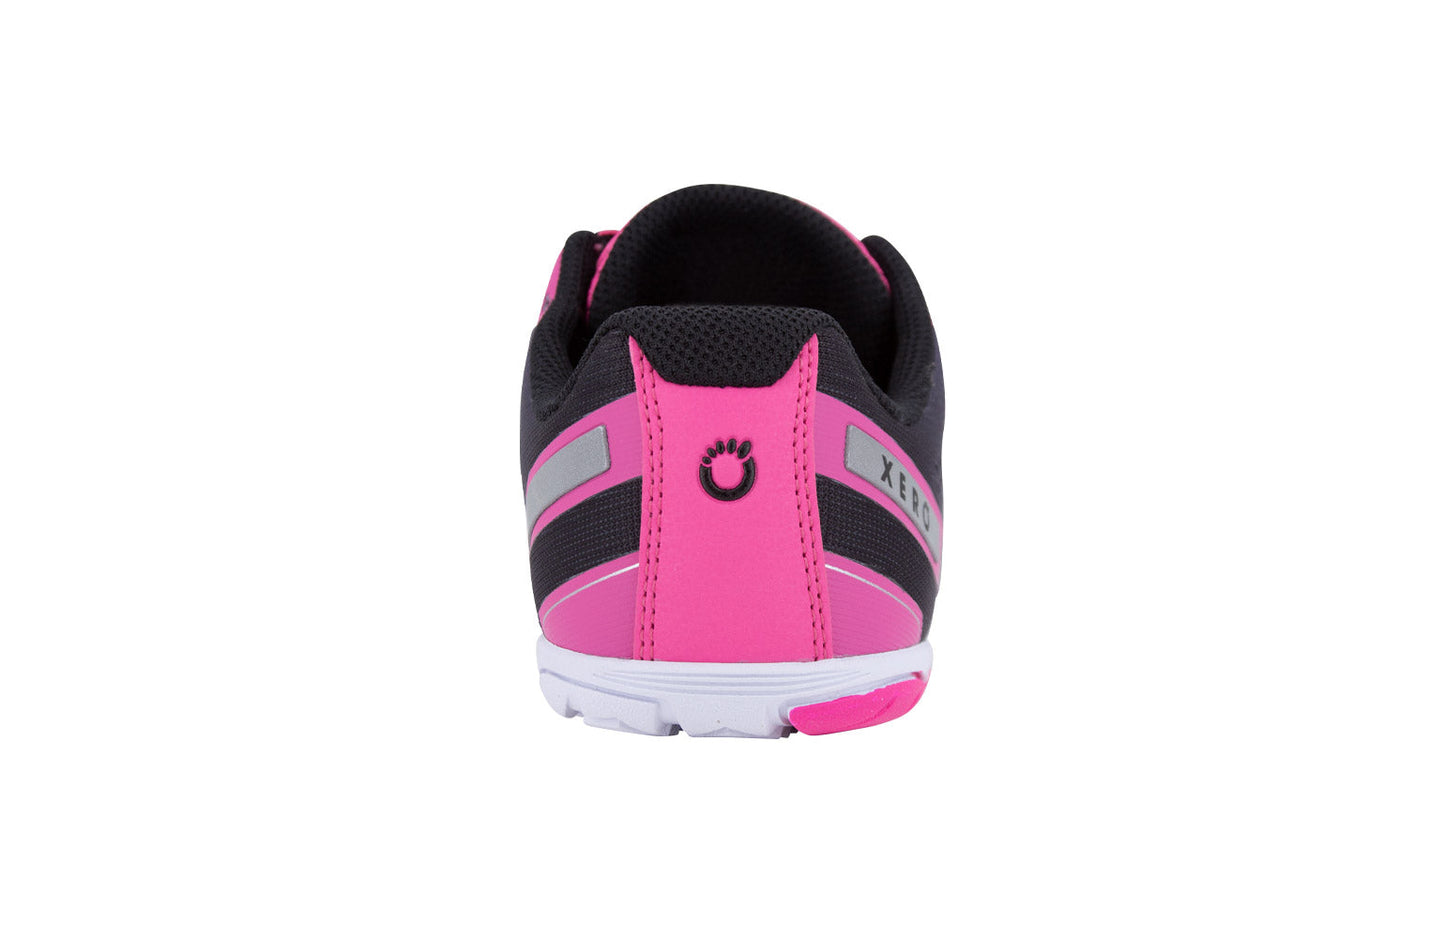 Xero Shoes HFS Womens barfods træningssko/løbesko til kvinder i farven pink glow, bagfra